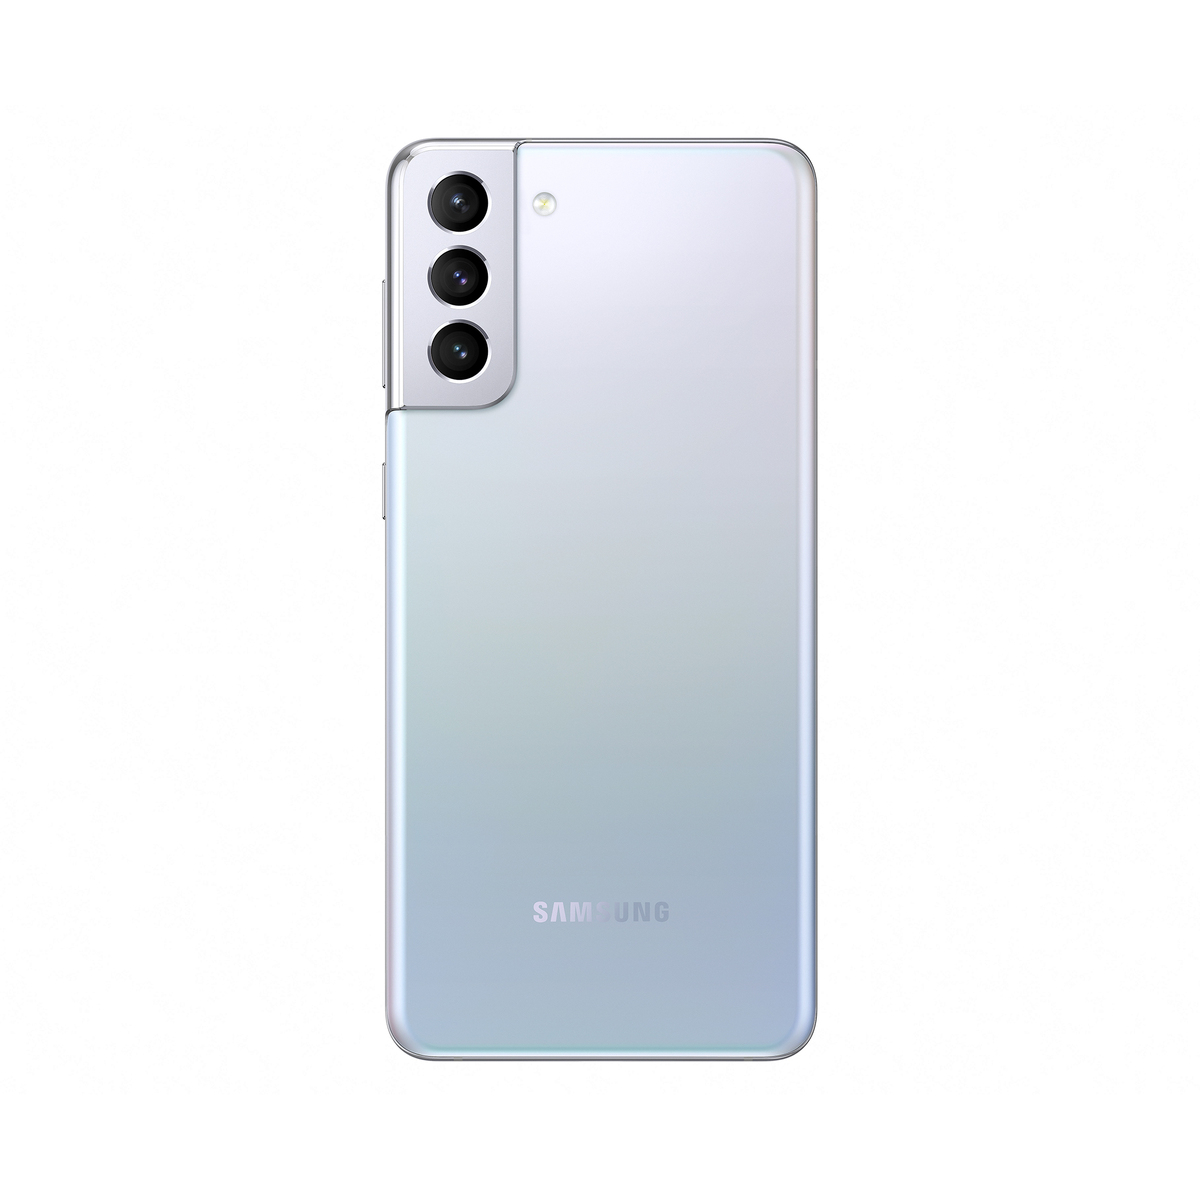 Samsung Galaxy S21+ G996 256GB 5G Silver